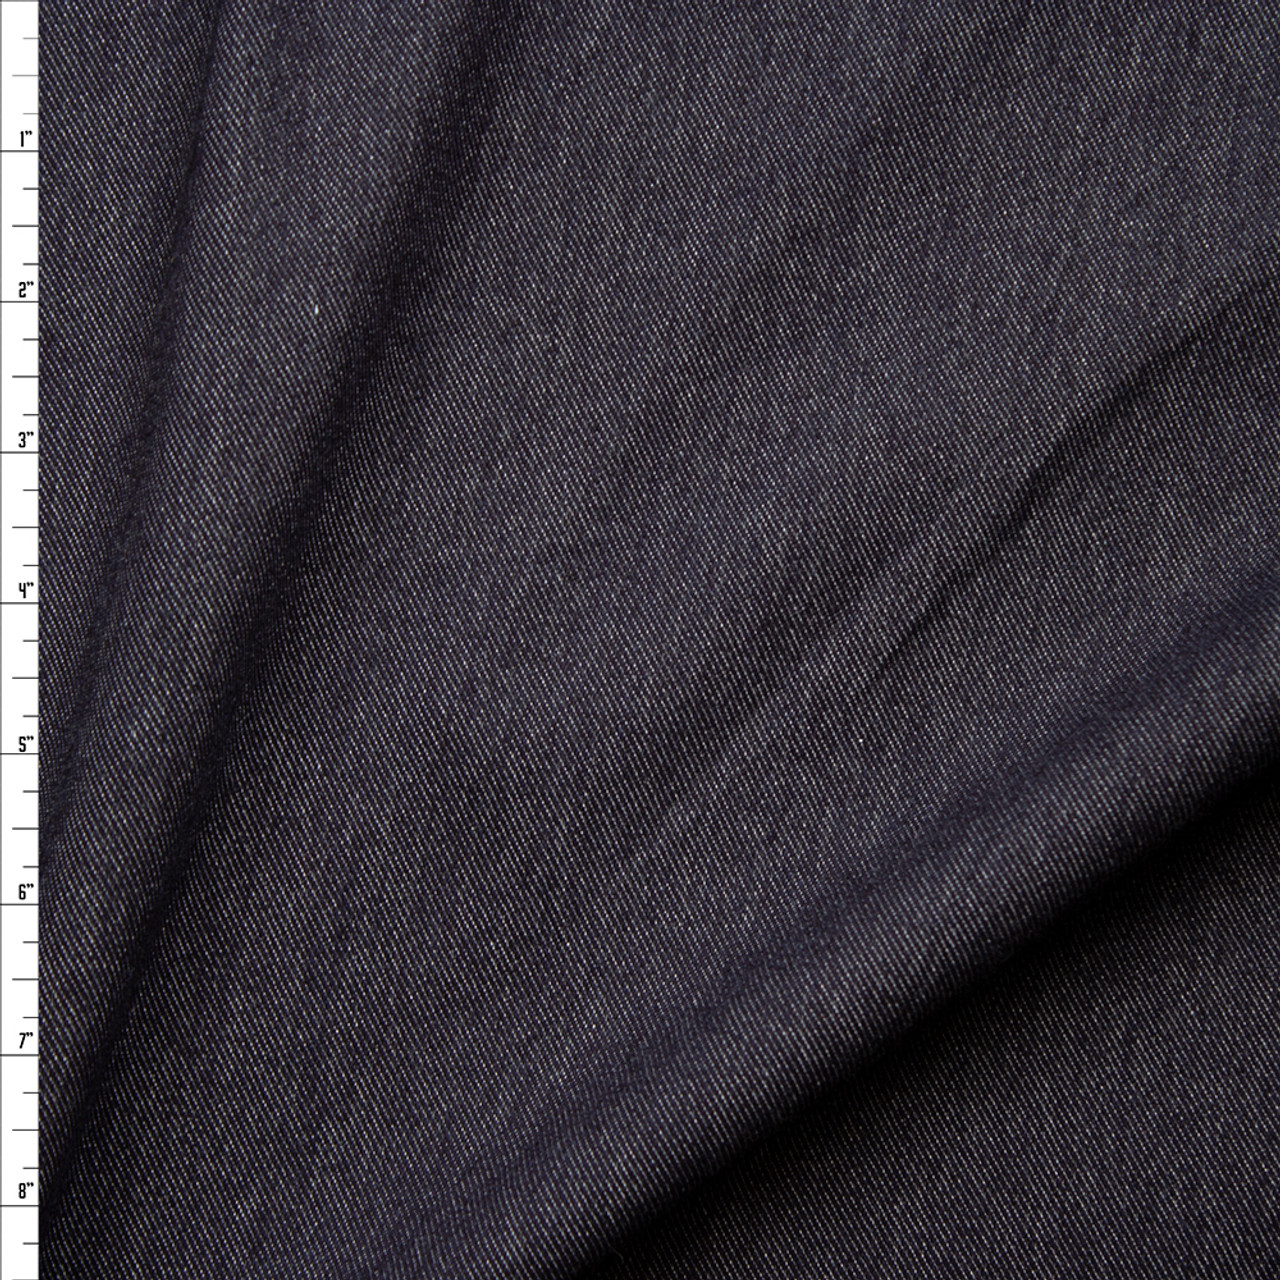 Cali Fabrics Dark Blue Heavy Denim Look Knit Fabric by the Yard